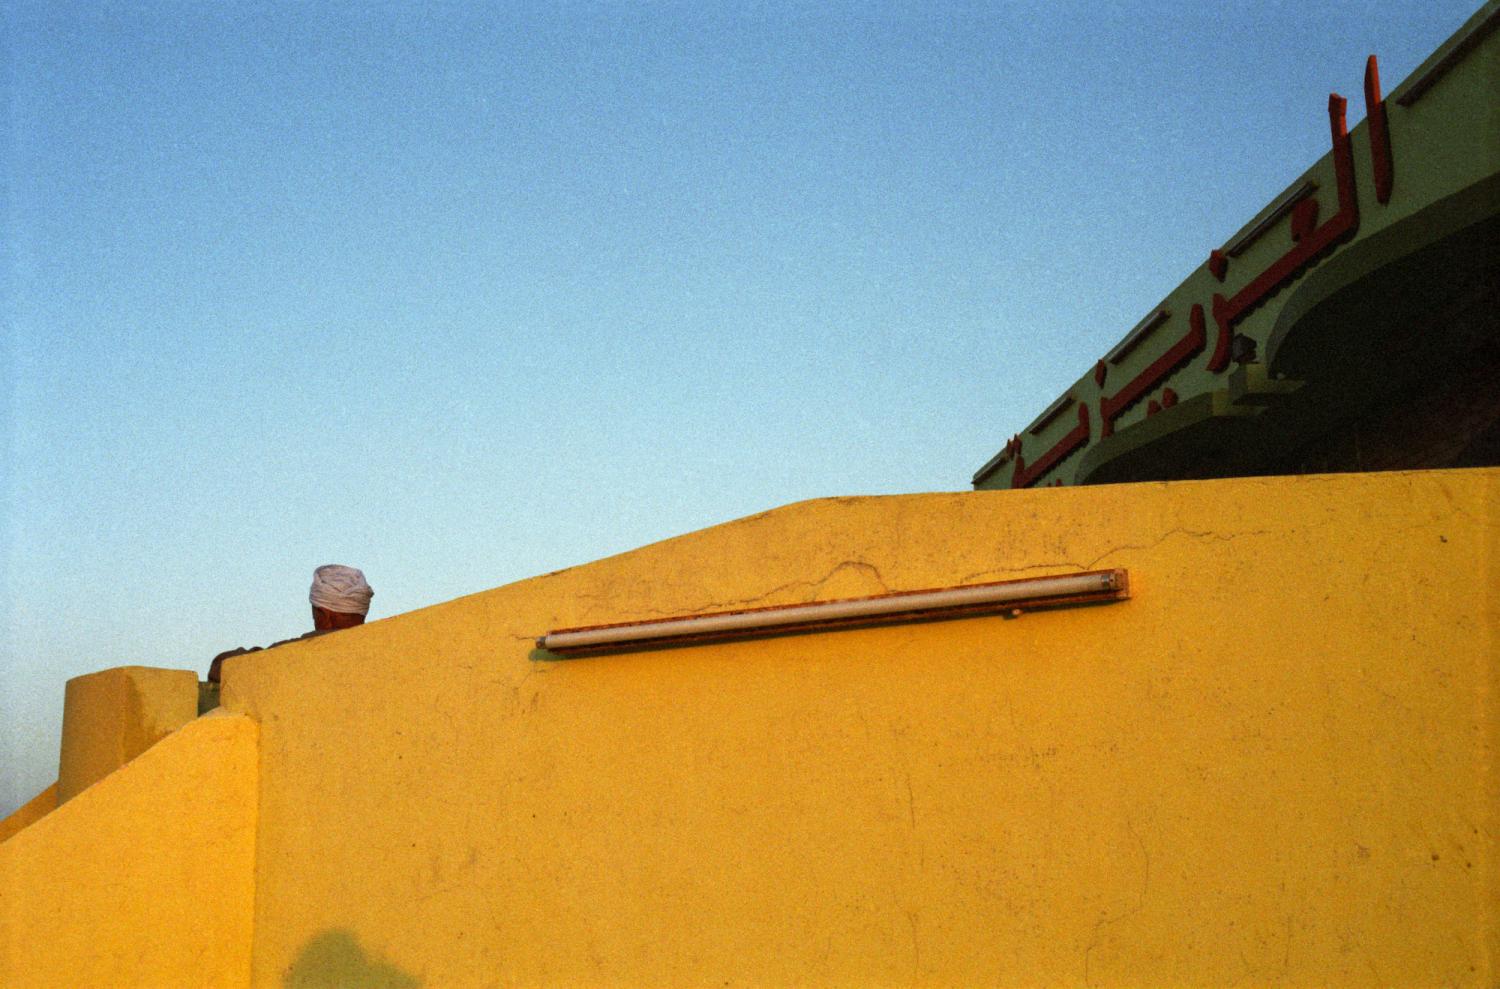 Une tête enturbannée dépasse du mur jaune de la terrasse d'un restaurant routier. Egypte, avril 2004.